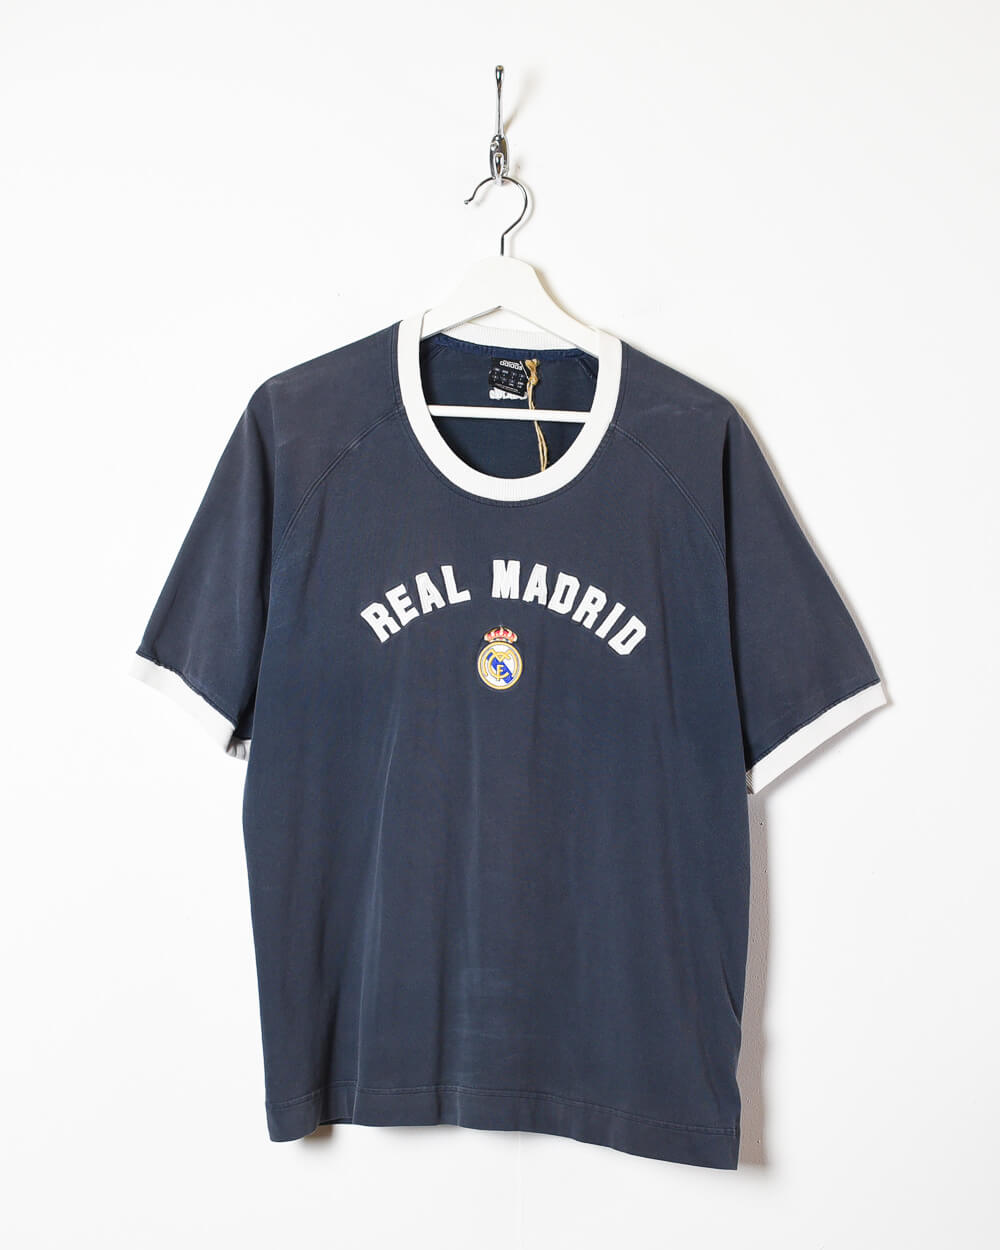 Navy Adidas Real Madrid 2007/08 T-Shirt - Medium